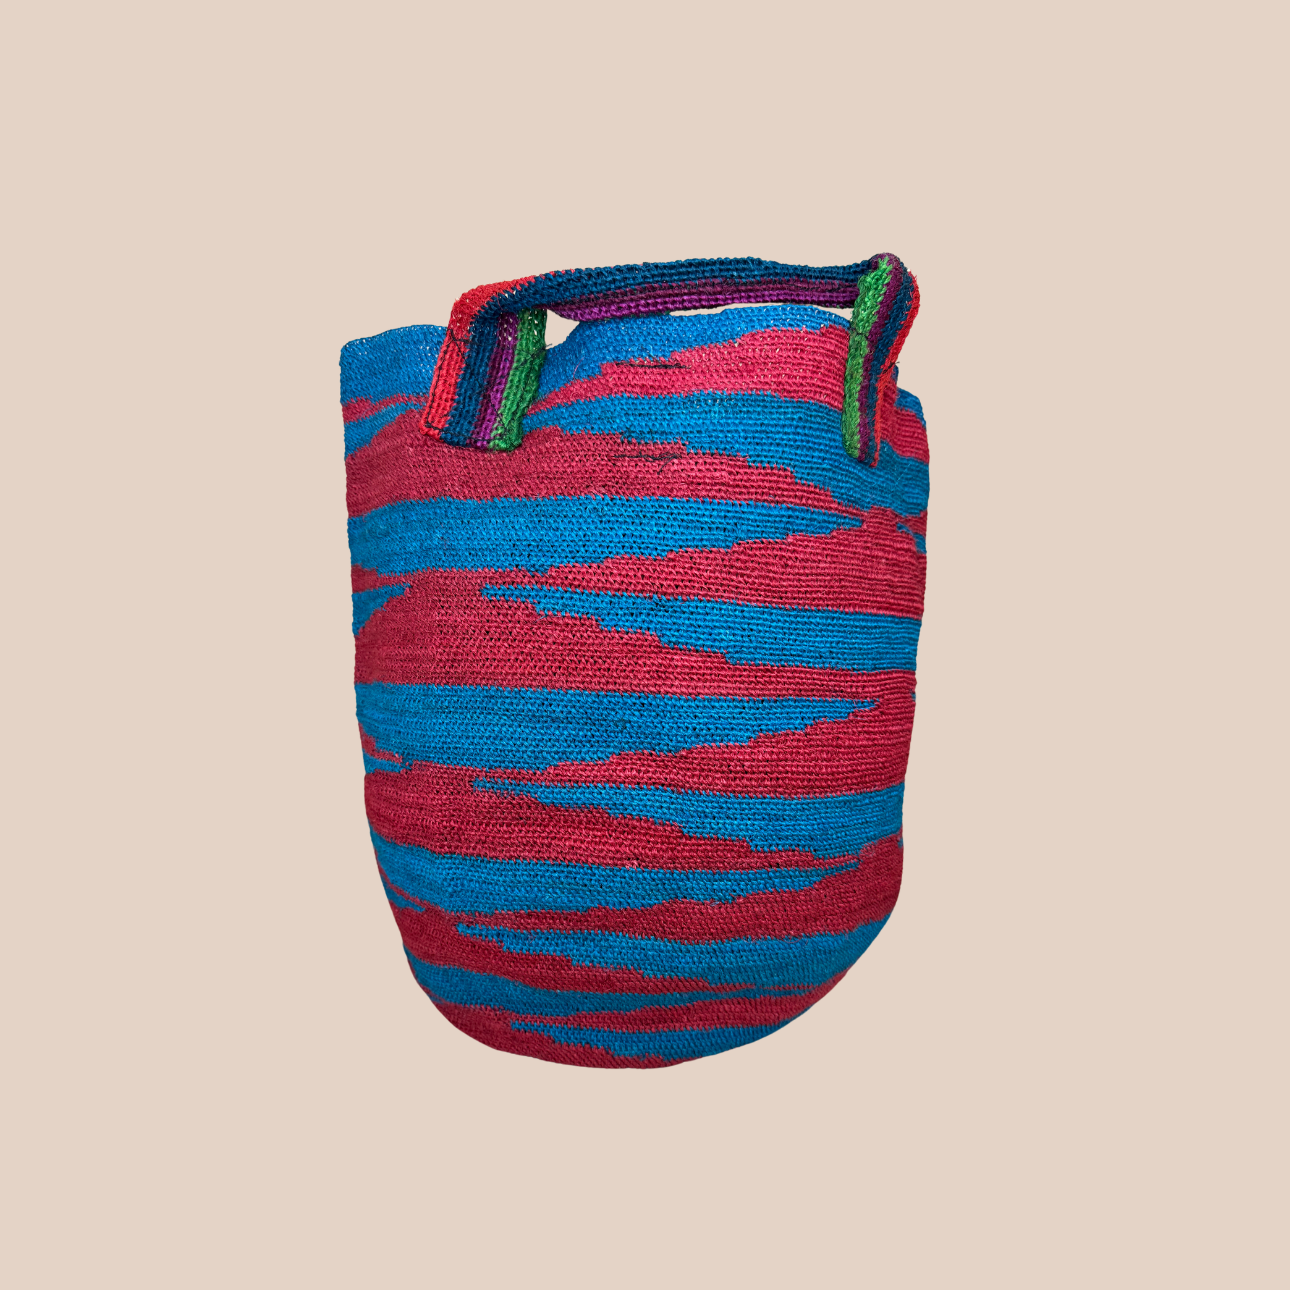 Image du sac ikal de Maison Badigo, sac en fibres de cactus multicolore unique et tendance